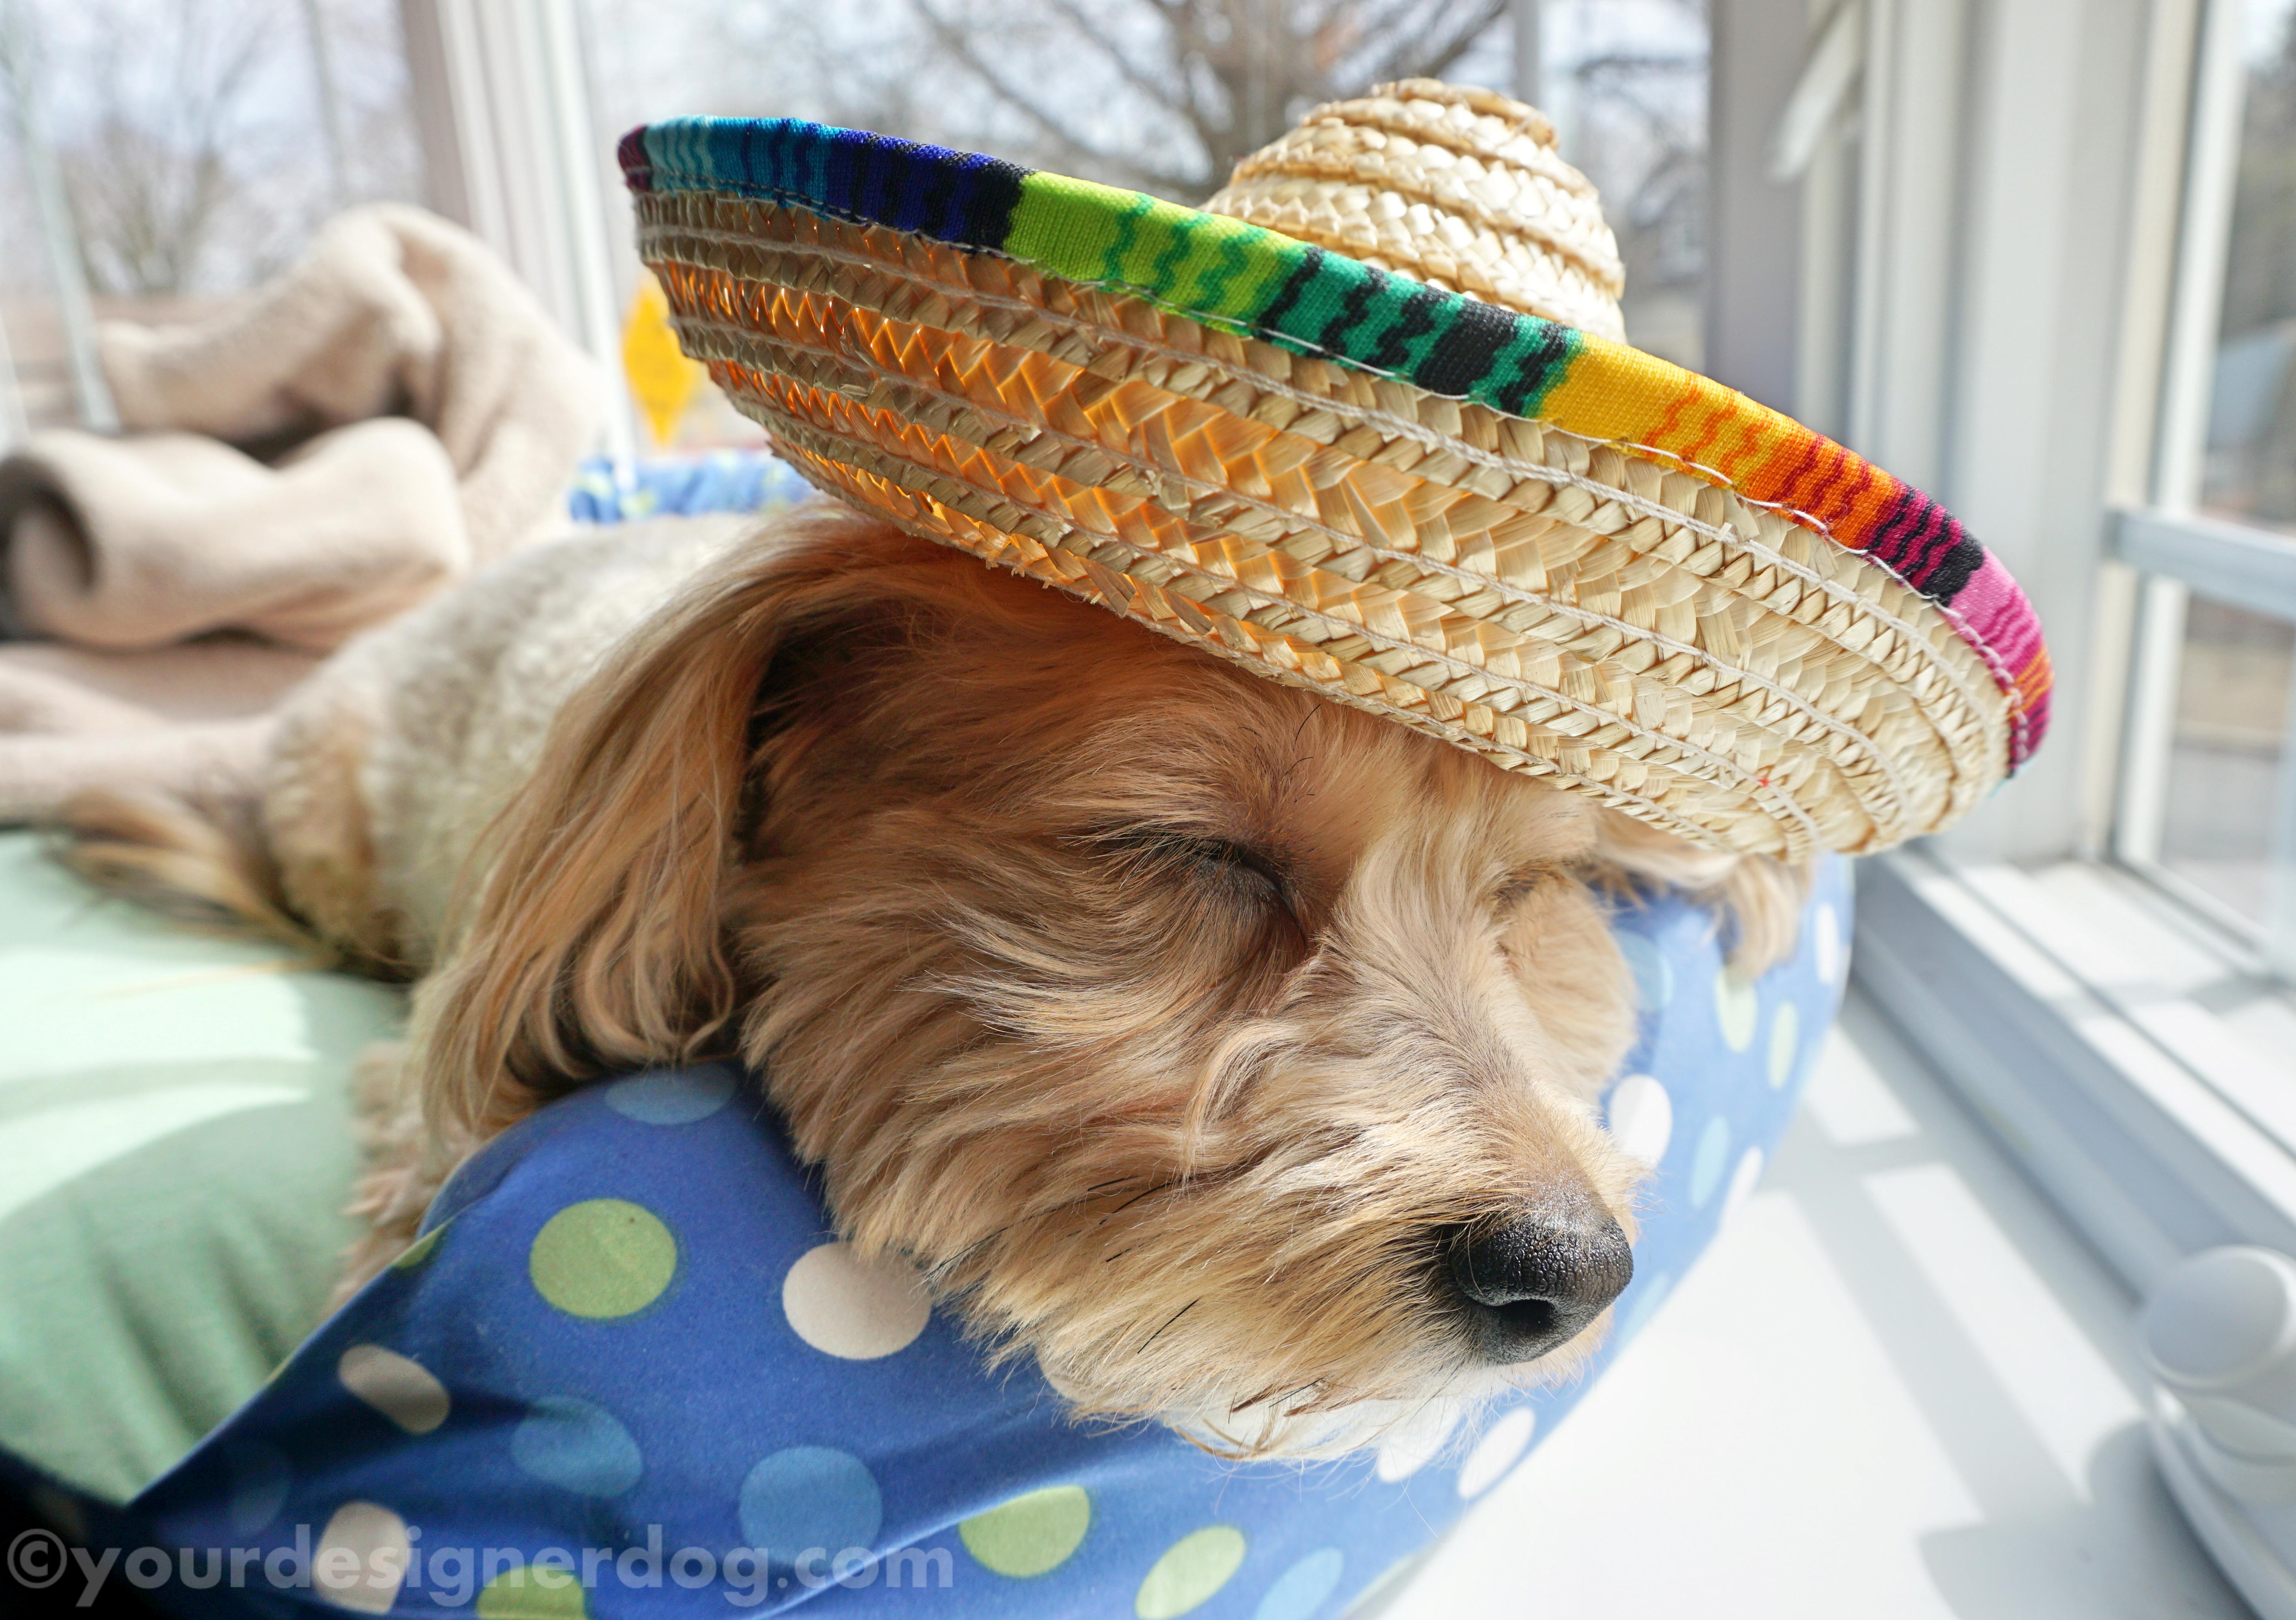 dogs, designer dogs, sombrero, sleepy puppy, siesta, cinco de mayo, mexican